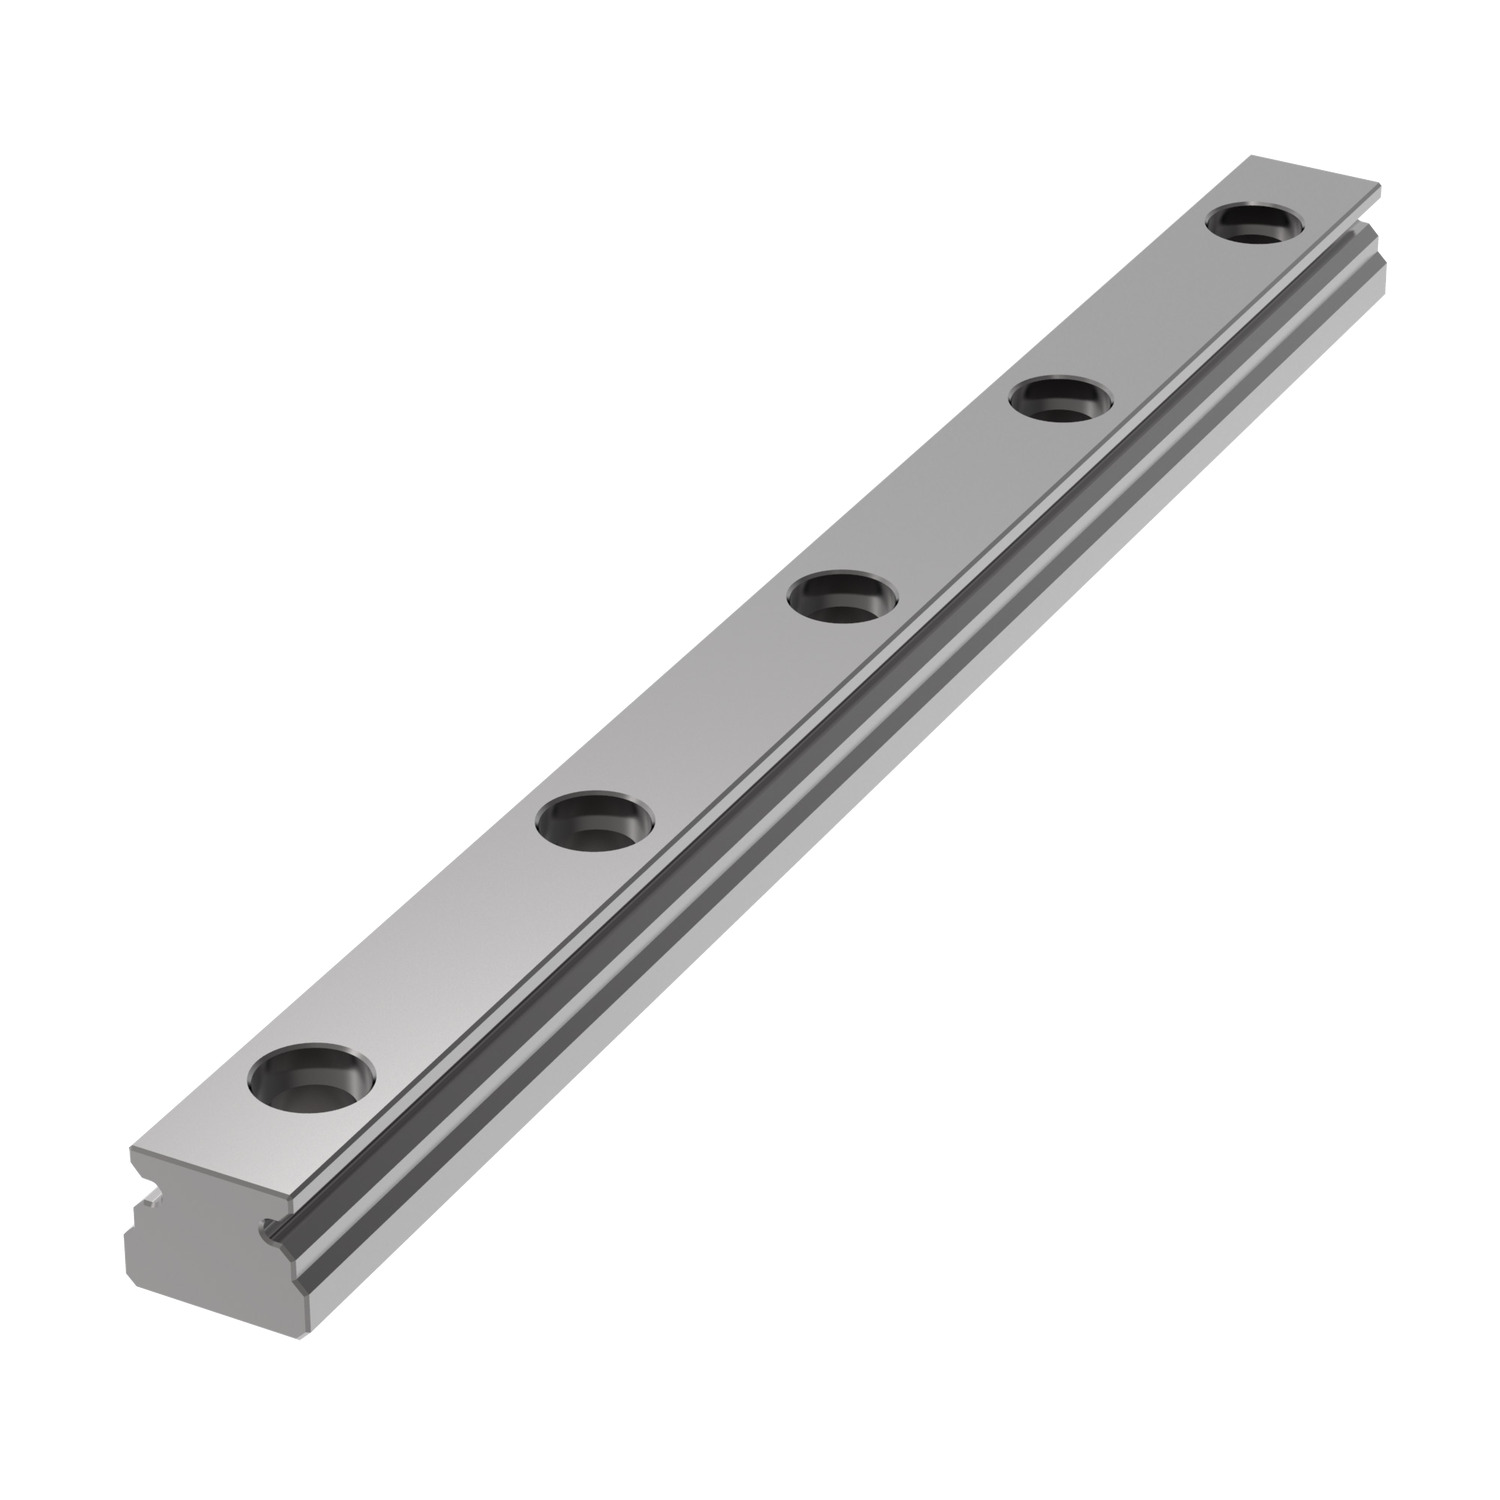 L1010.07 7mm Miniature Linear Rail